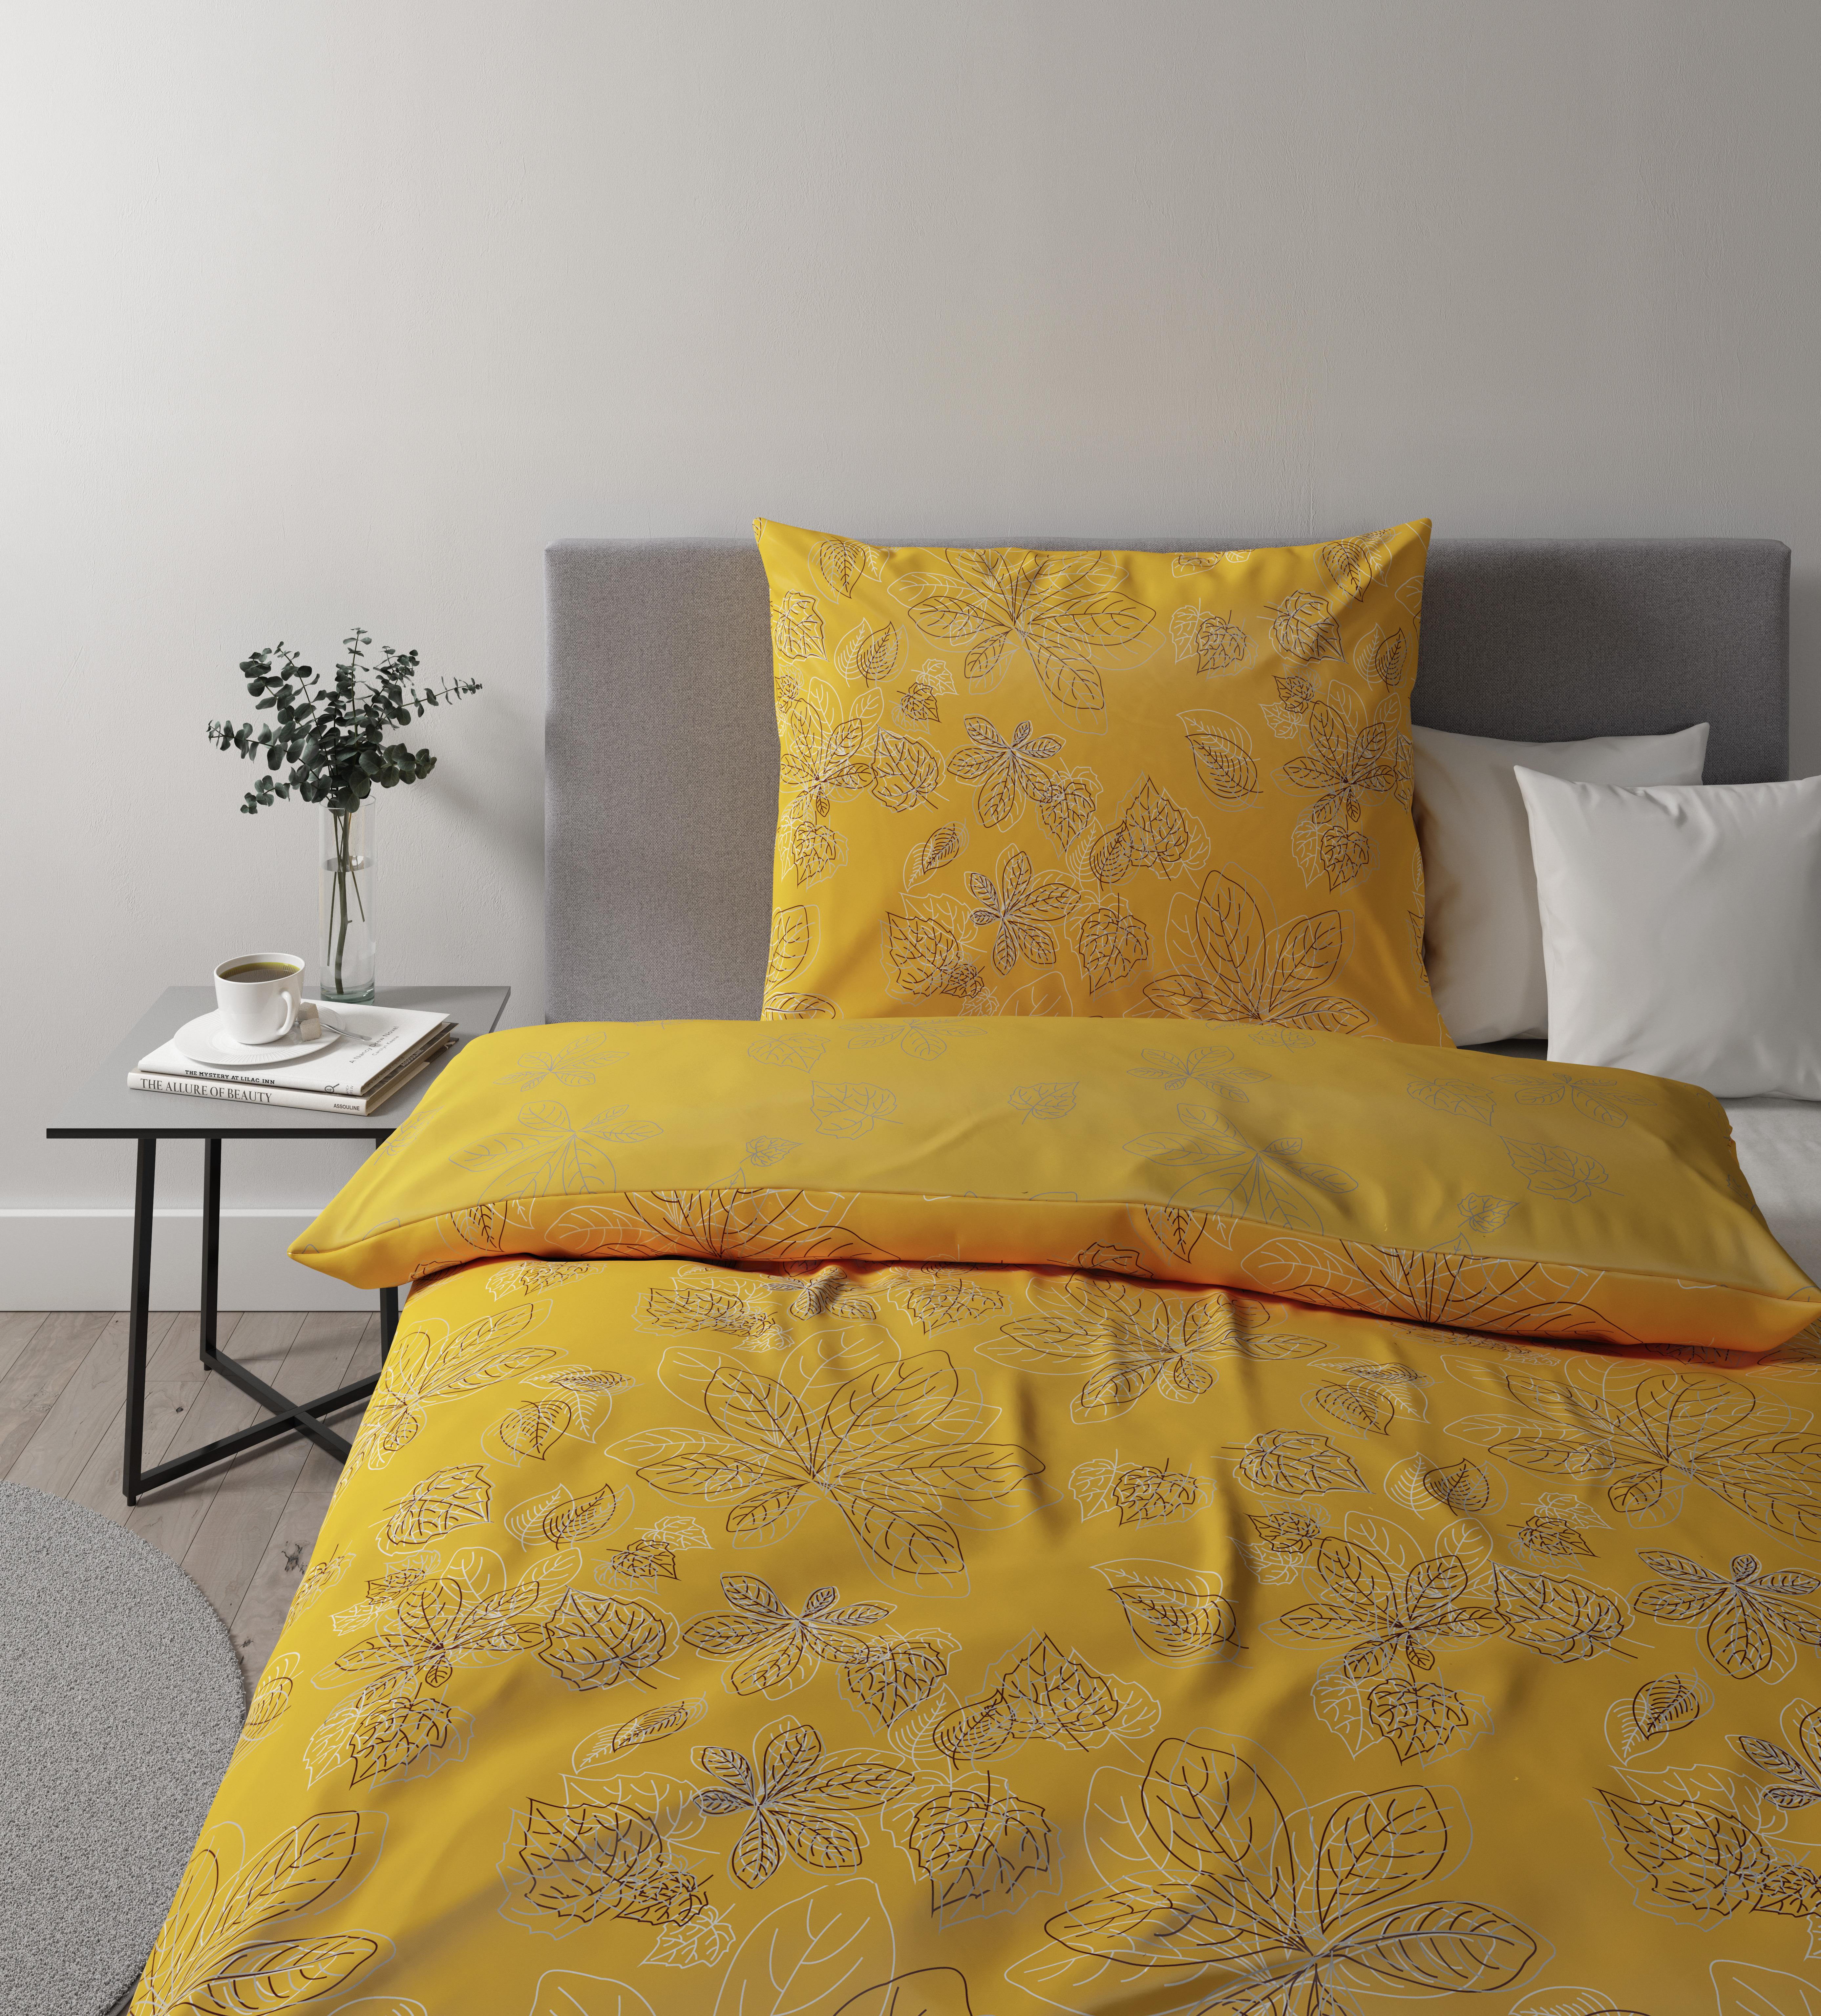 Saténové Povlečení Eden, 140/200cm, Žlutá - žlutá, Romantický / Rustikální, textil (140/200cm) - Premium Living